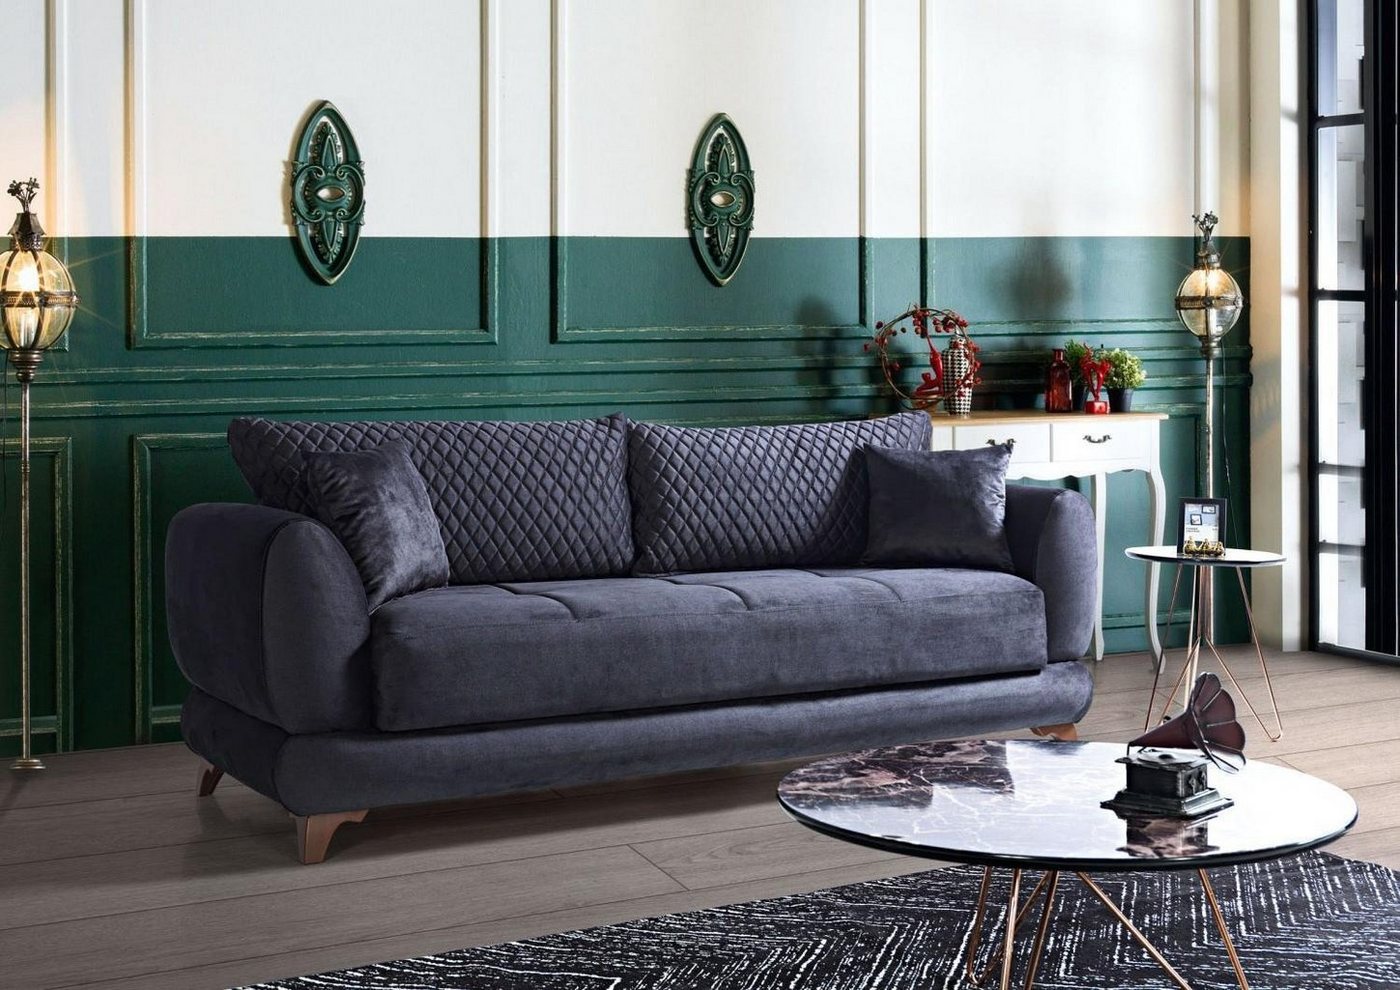 JVmoebel Sofa Dreisitzer Couch mit Schlaffunktion Sofa Bett Klappcouch Textil Sofas, Made In Europe von JVmoebel